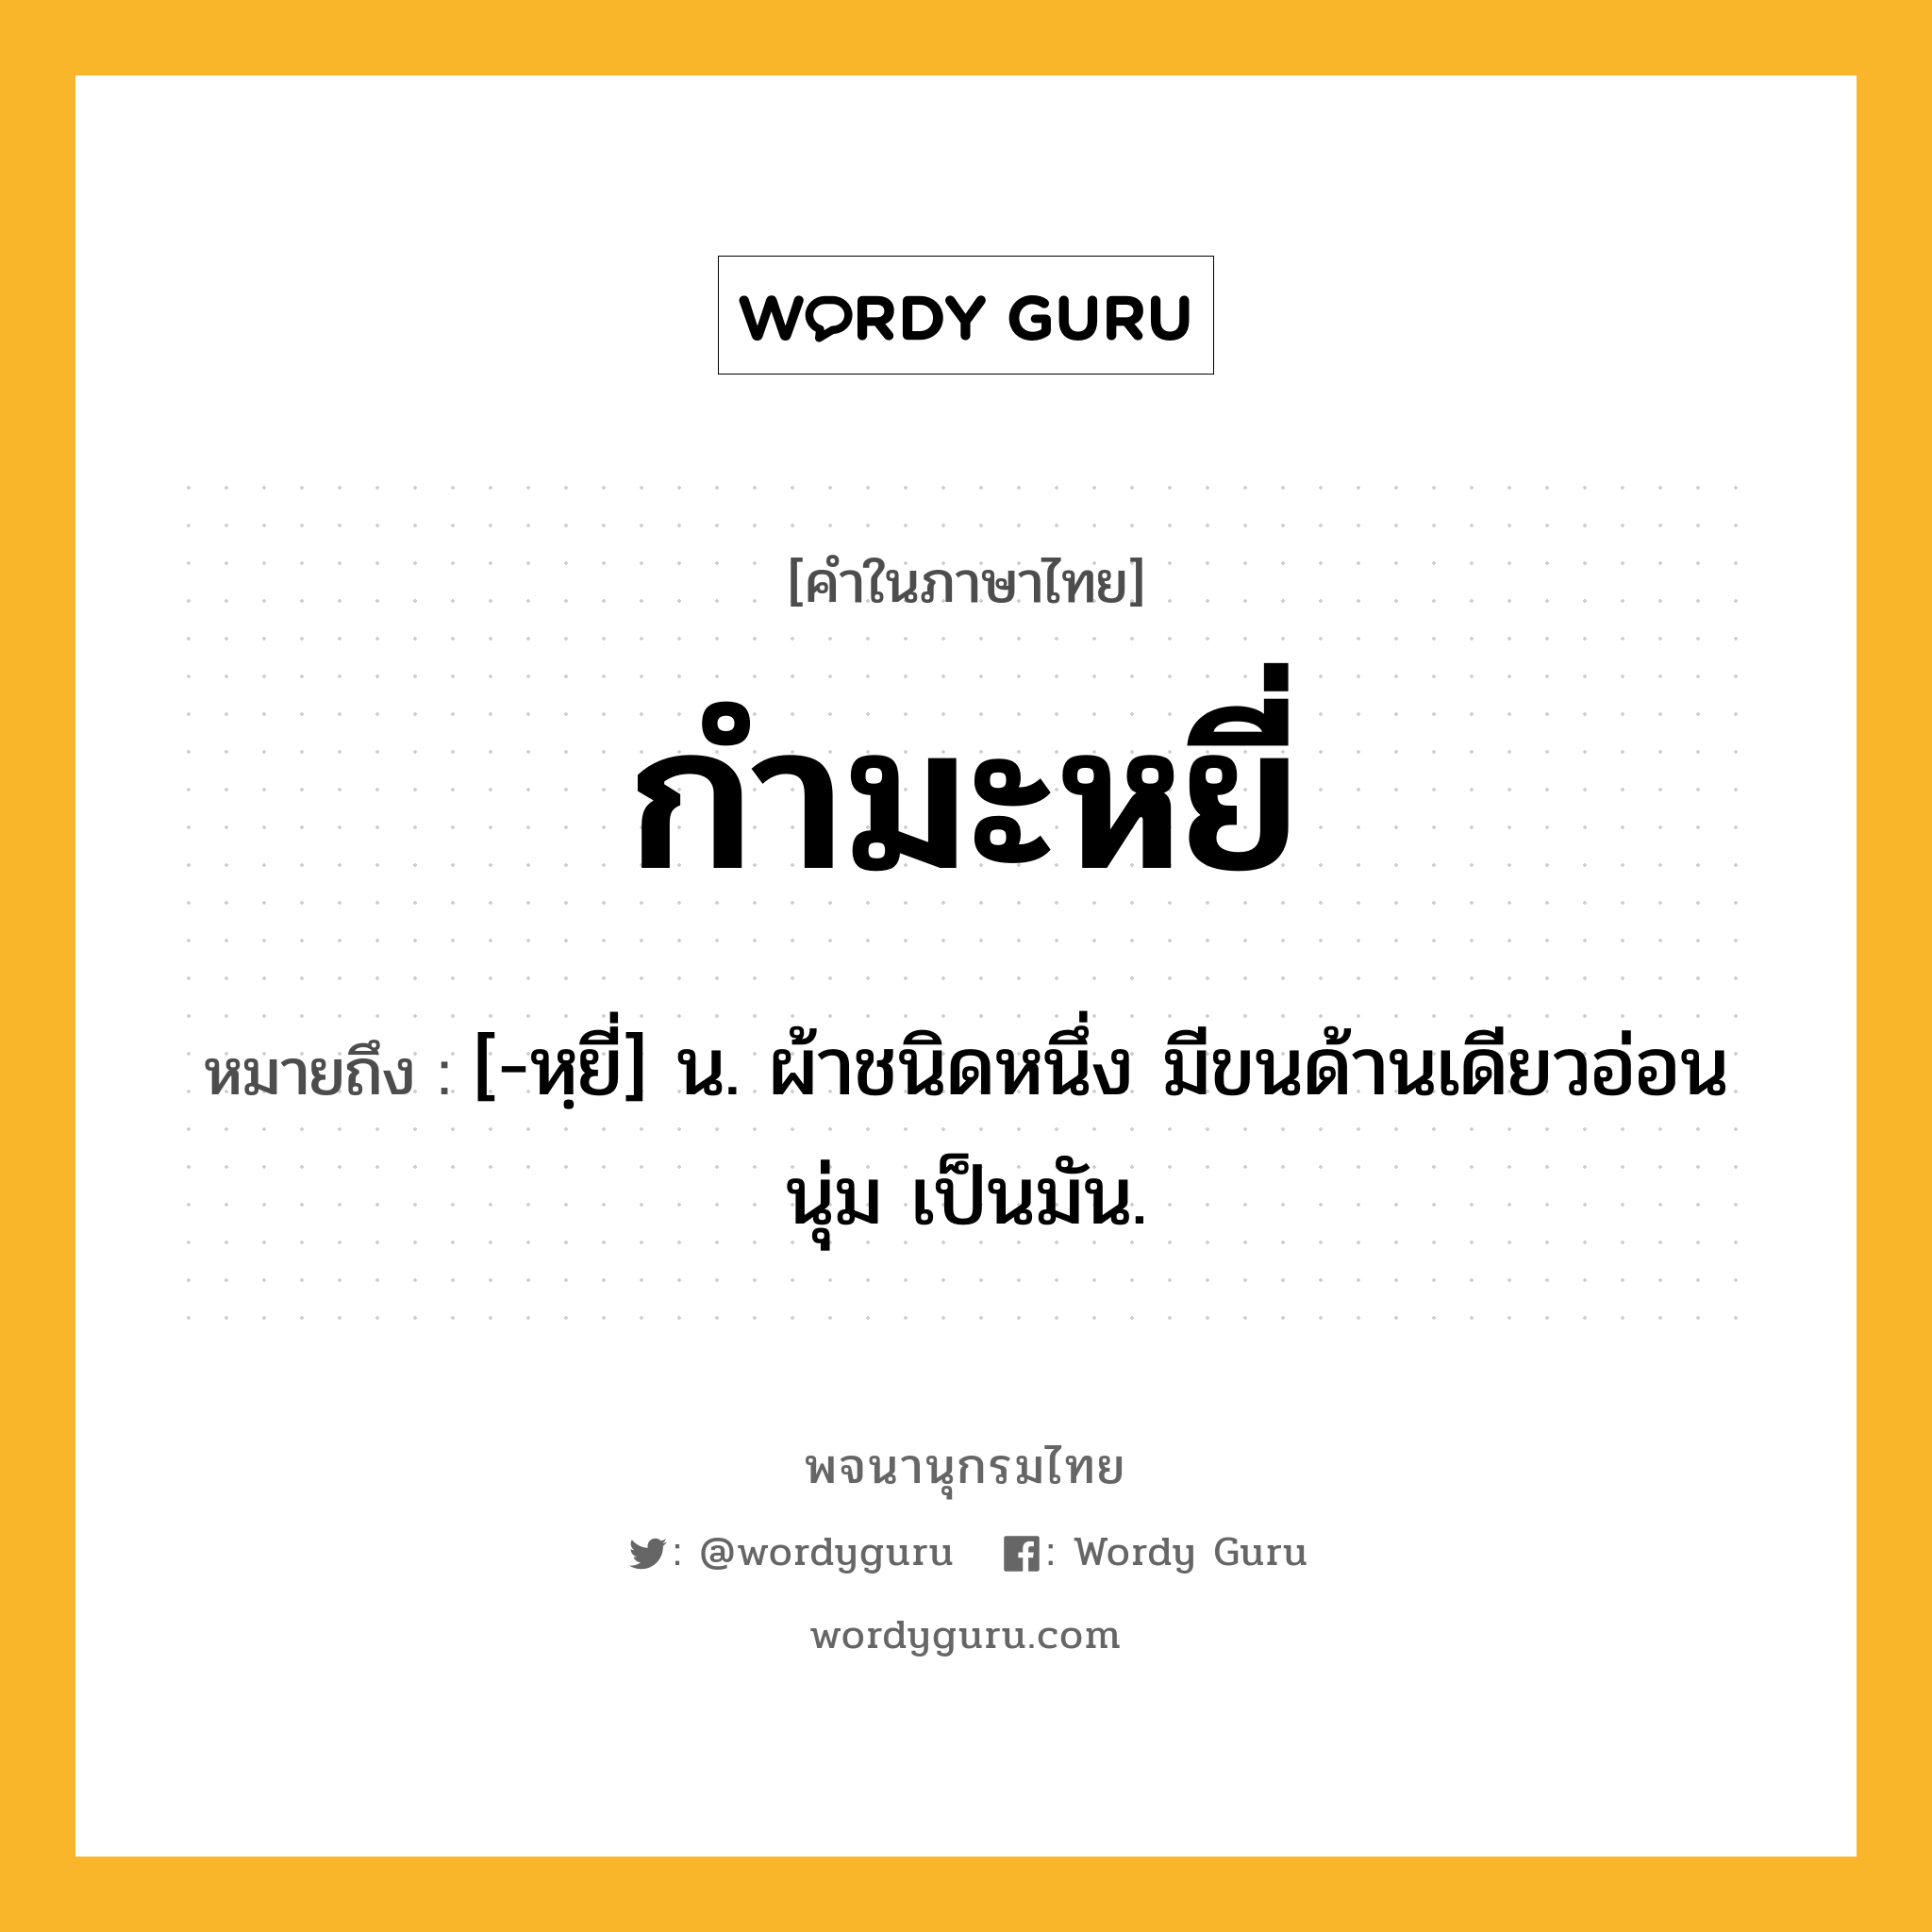 กำมะหยี่ ความหมาย หมายถึงอะไร?, คำในภาษาไทย กำมะหยี่ หมายถึง [-หฺยี่] น. ผ้าชนิดหนึ่ง มีขนด้านเดียวอ่อนนุ่ม เป็นมัน.